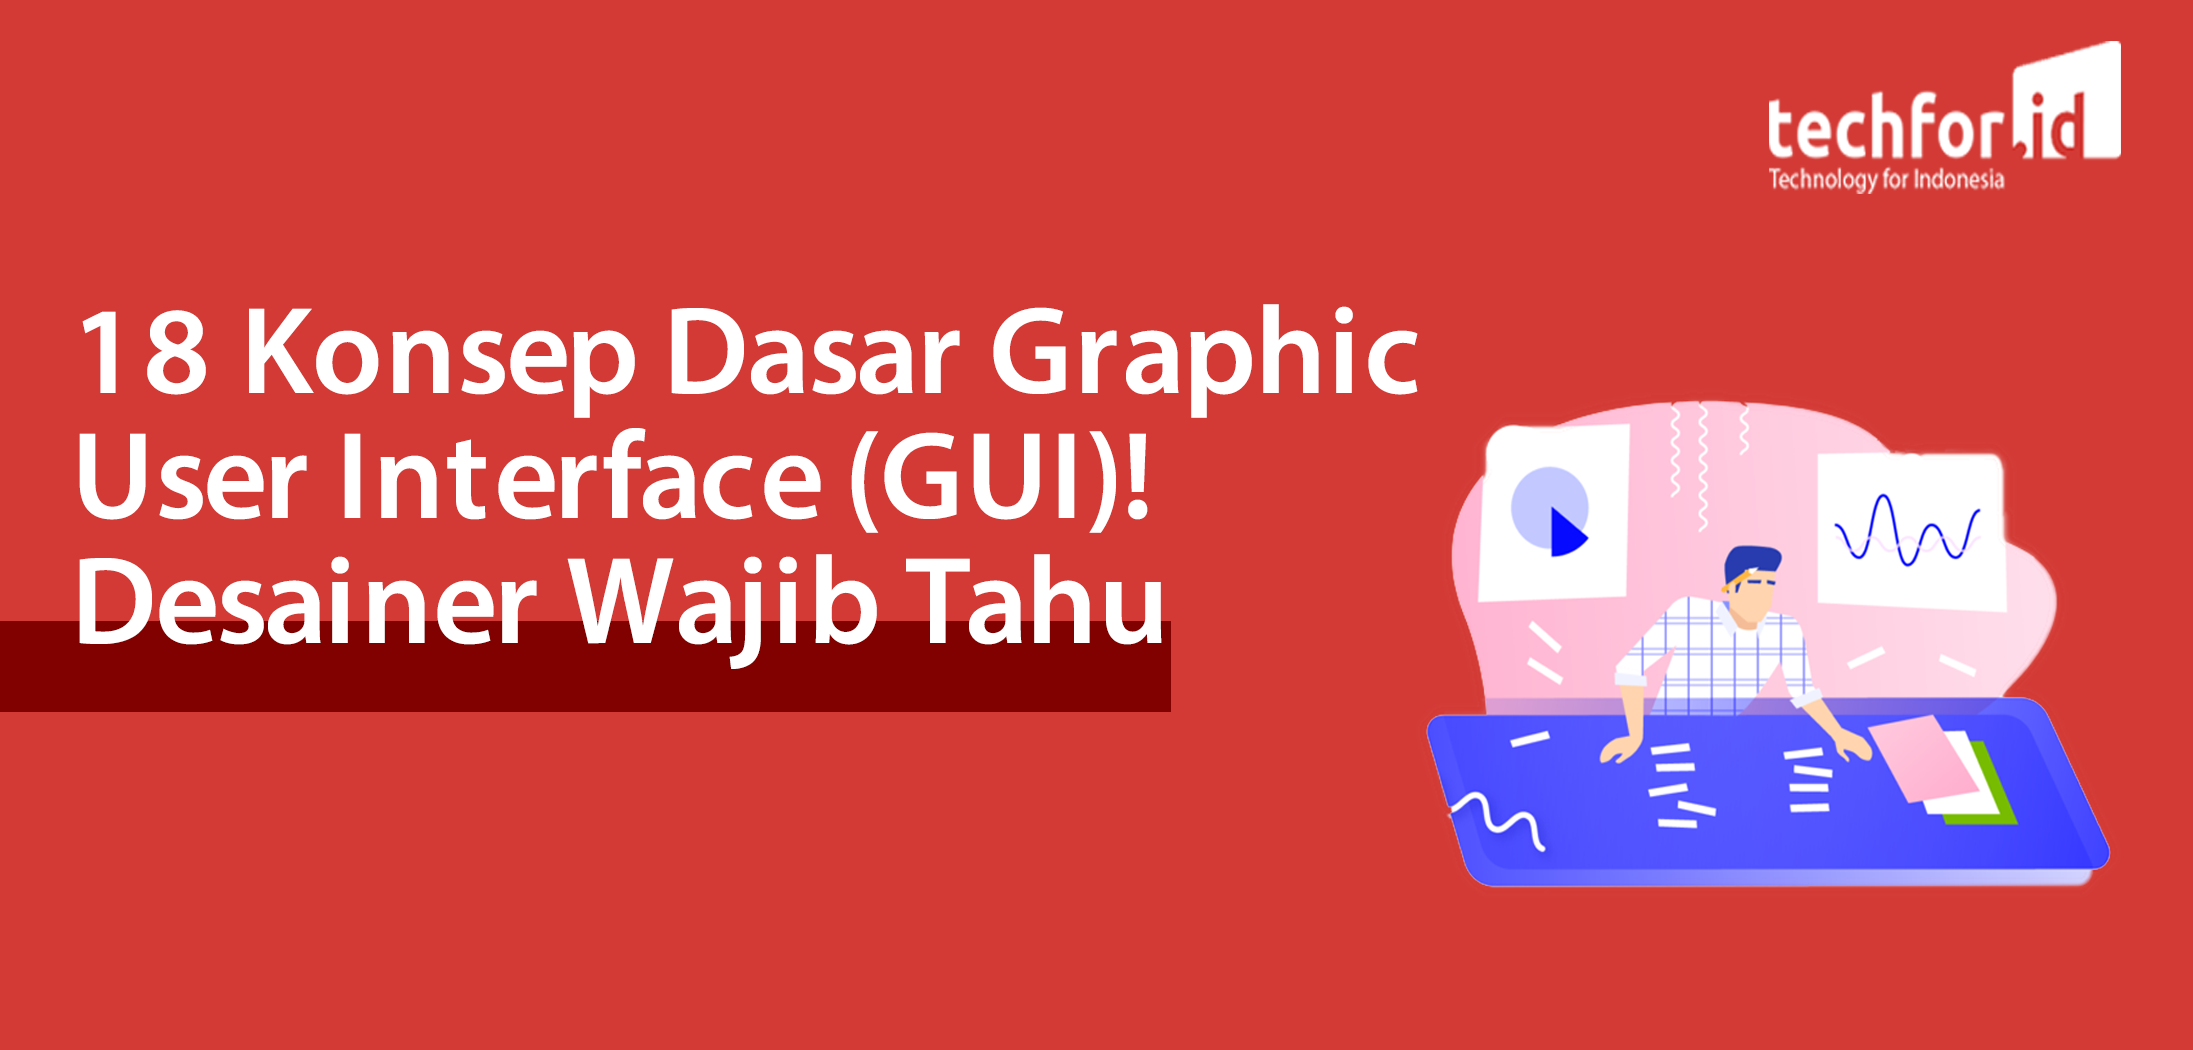 18 Konsep Dasar Graphic User Interface (GUI)! Desainer Wajib Tahu